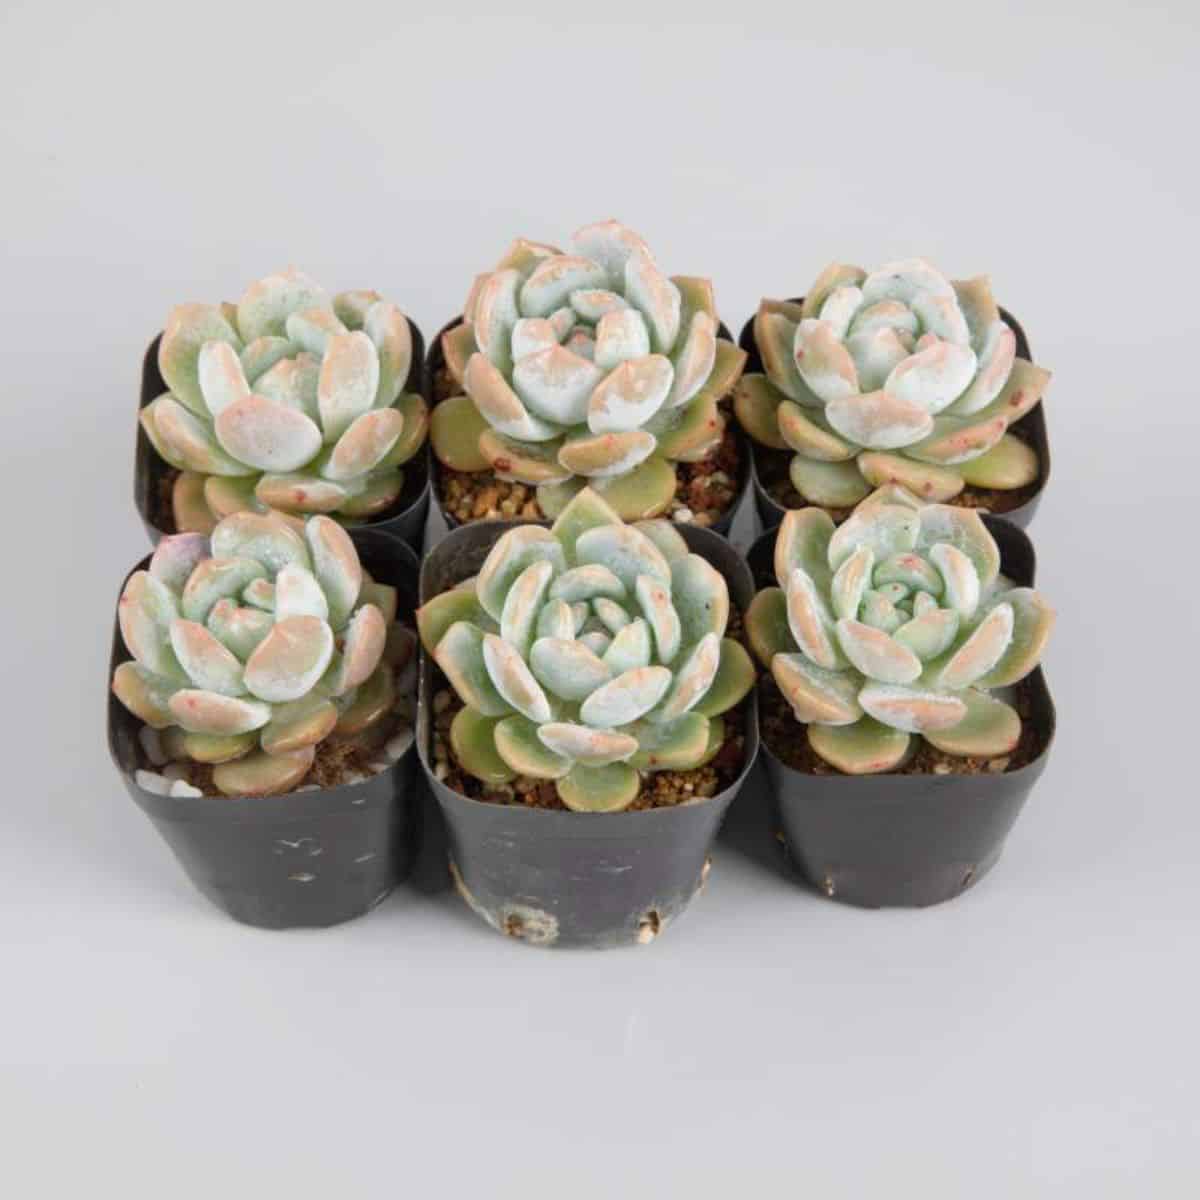 Six Ice Green Echeverias in pots.